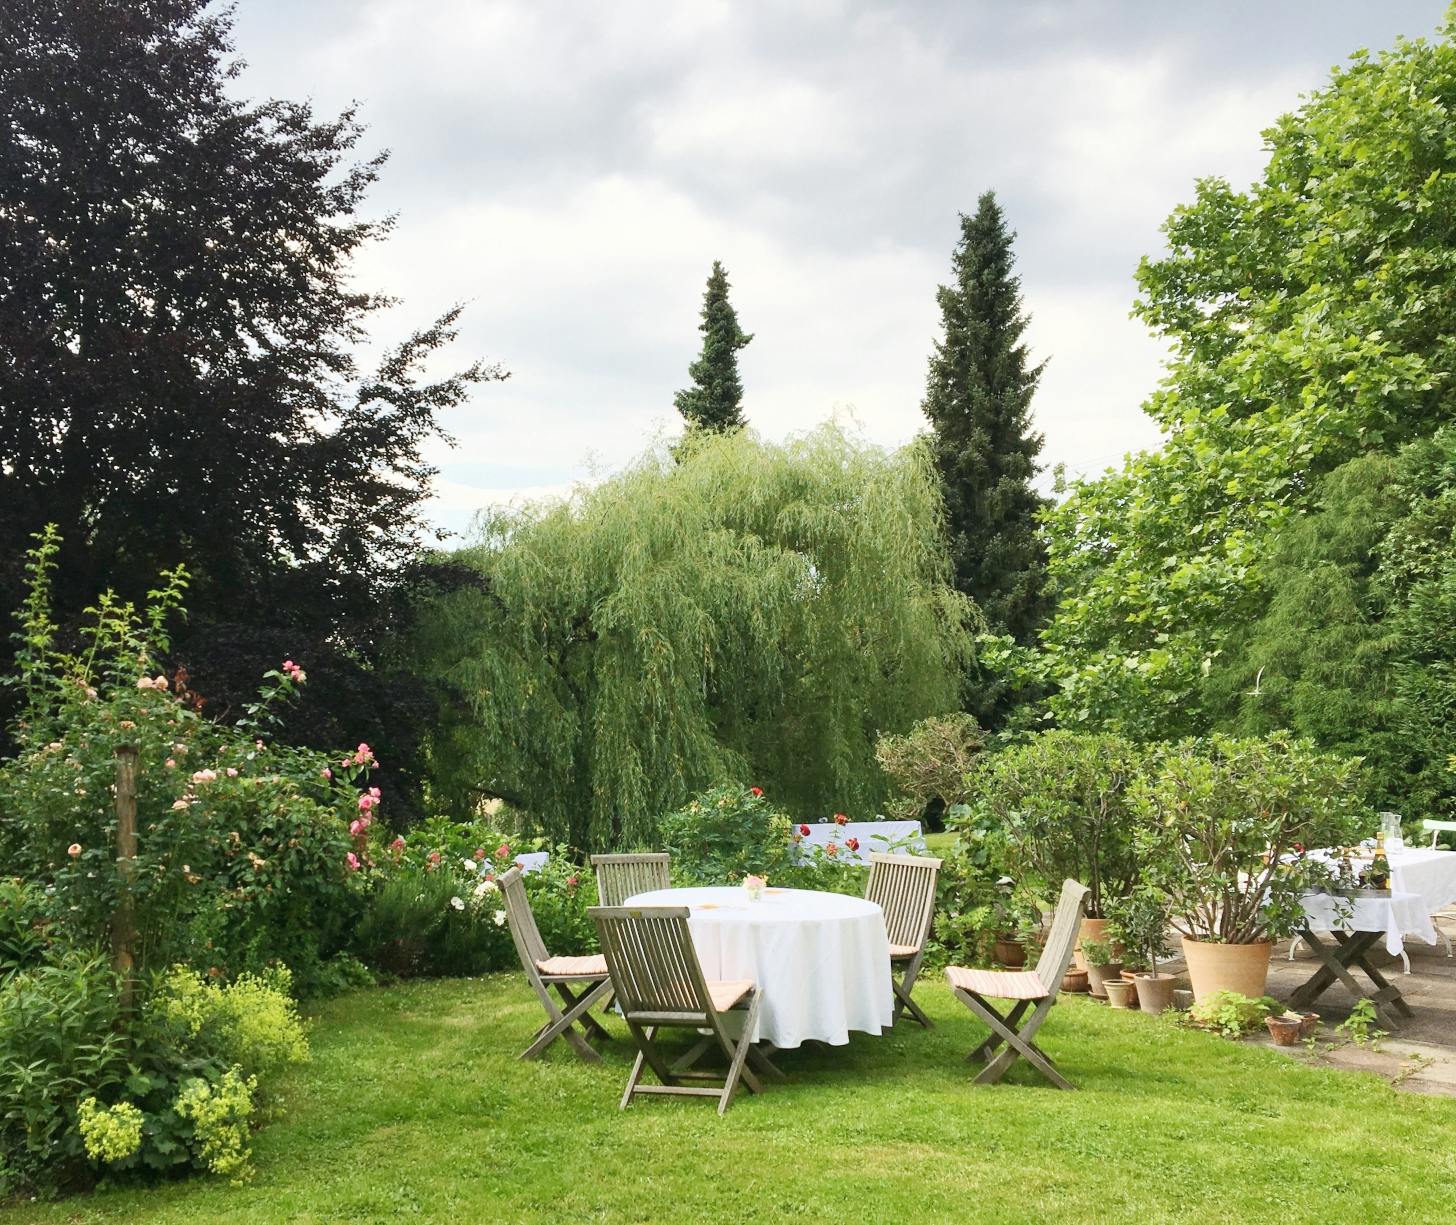 Gartenfreunde inspirieren und sich über private Grün-Oasen austauschen – das ist das Ziel des „Tags der offenen Gartentür“.